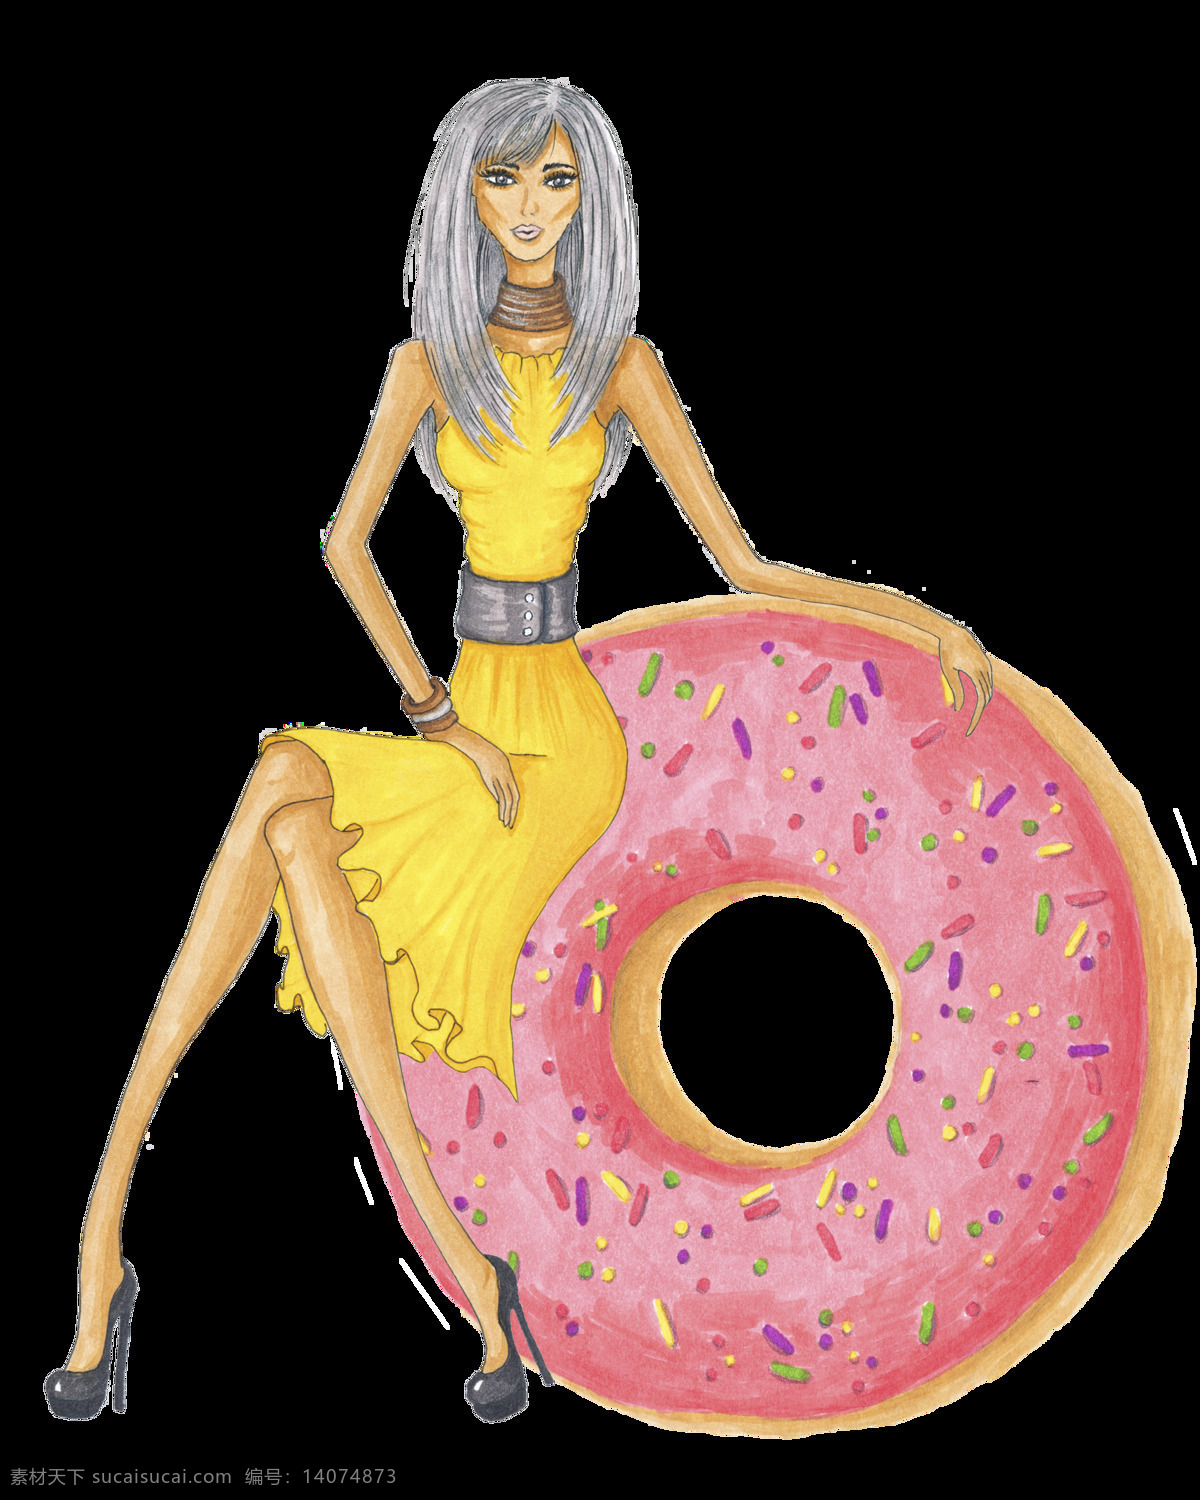 少女 模特 卡通 透明 装饰 甜甜圈 黄色 粉色 矢量素材 设计素材